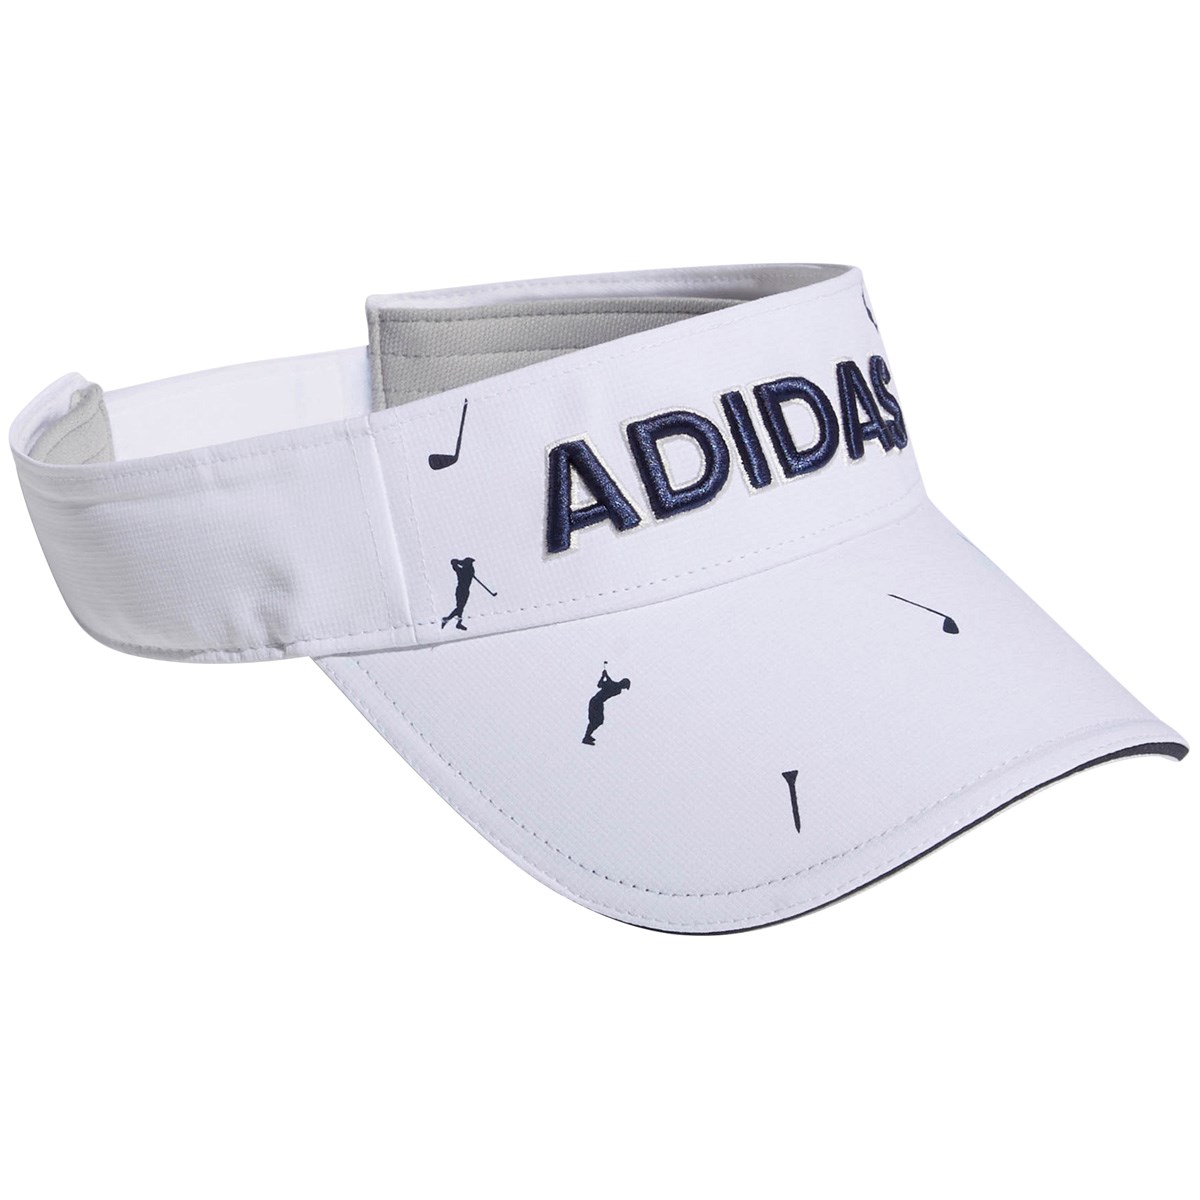 アディダス(adidas) ADICROSS モノグラムプリントサンバイザー 